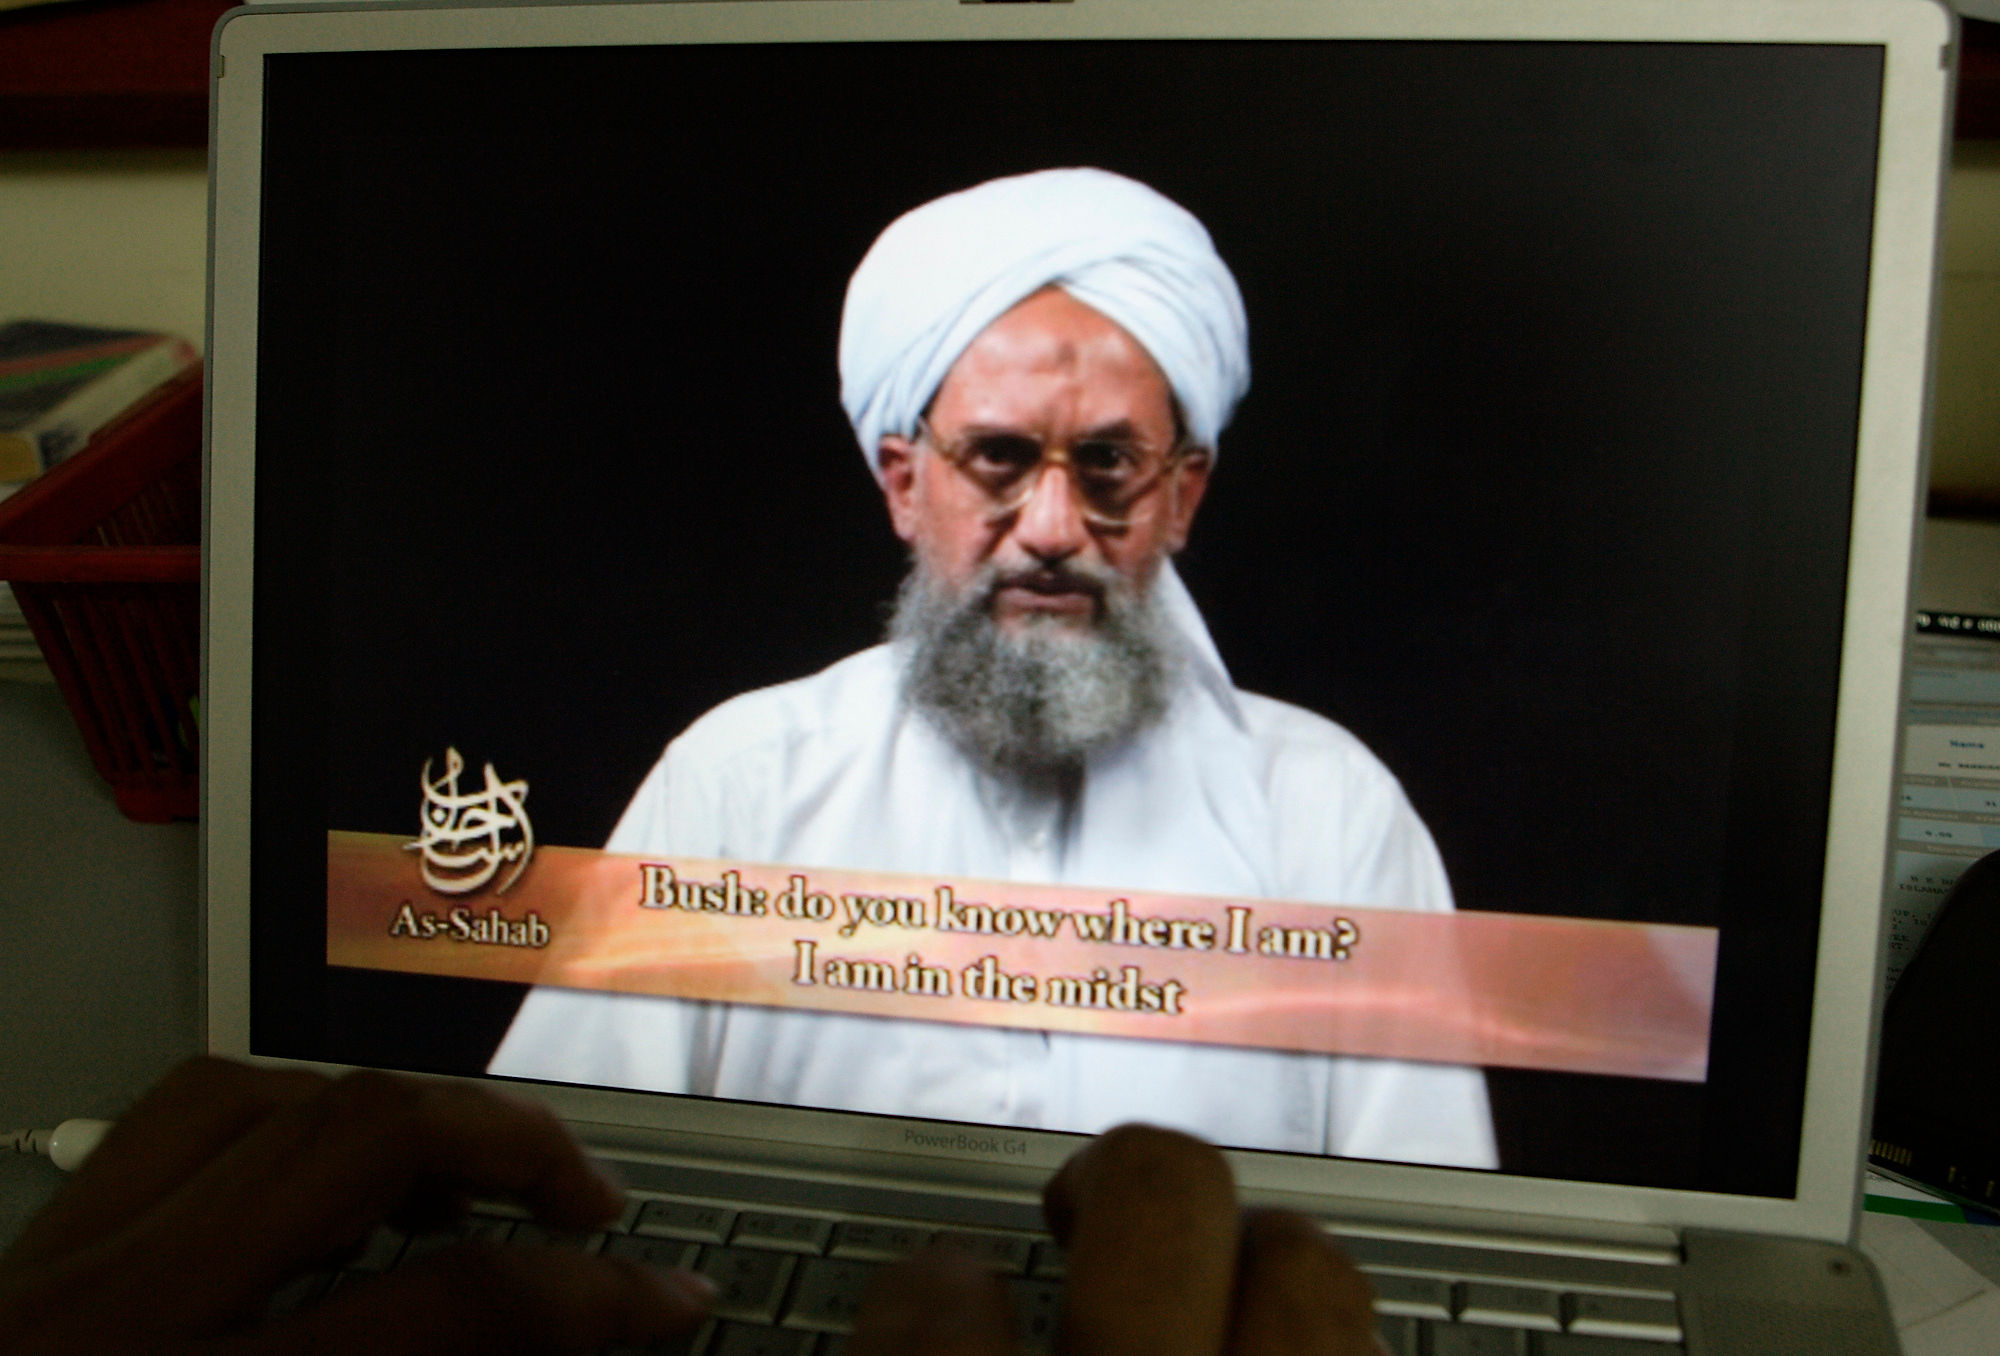 Justice has been delivered: Biden on al-Qaeda leader al-Zawahri killing